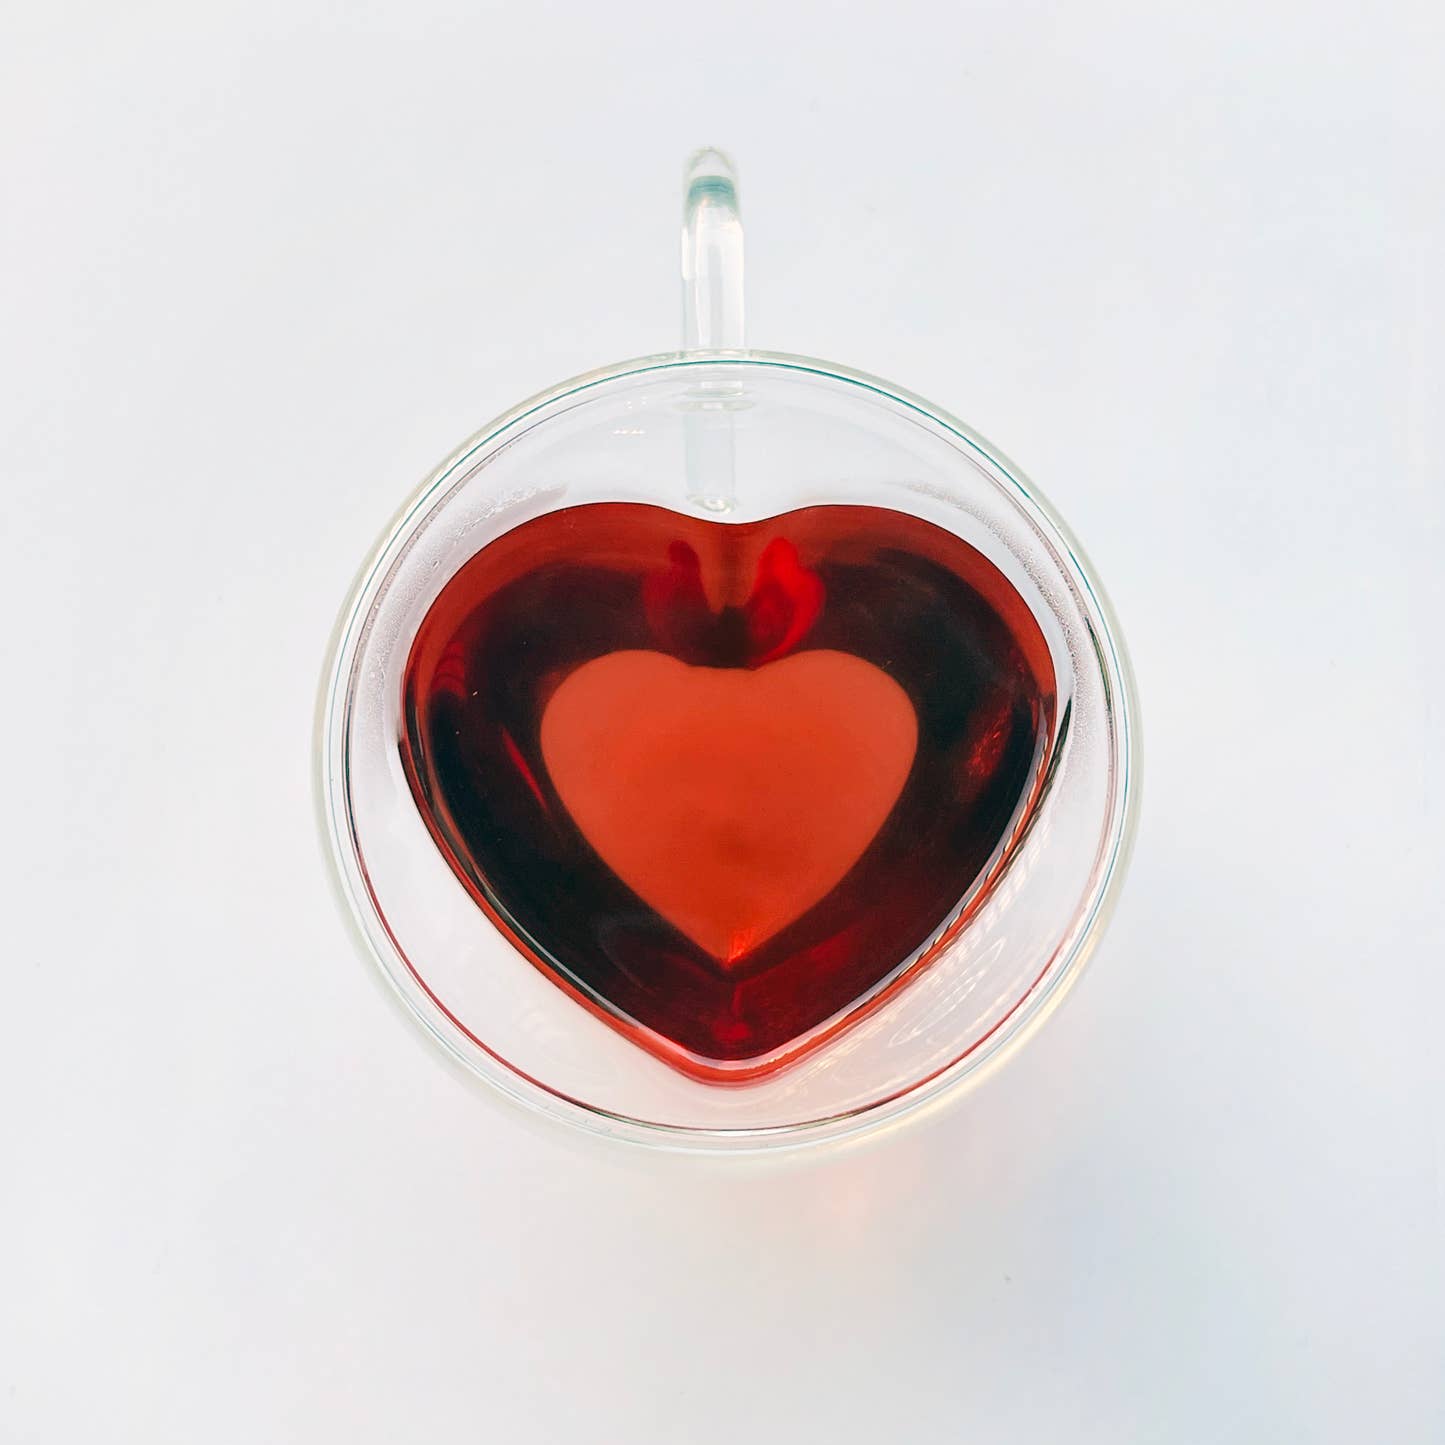 Glass heart mug with steeped Joyful tea by Your Botanical Friend